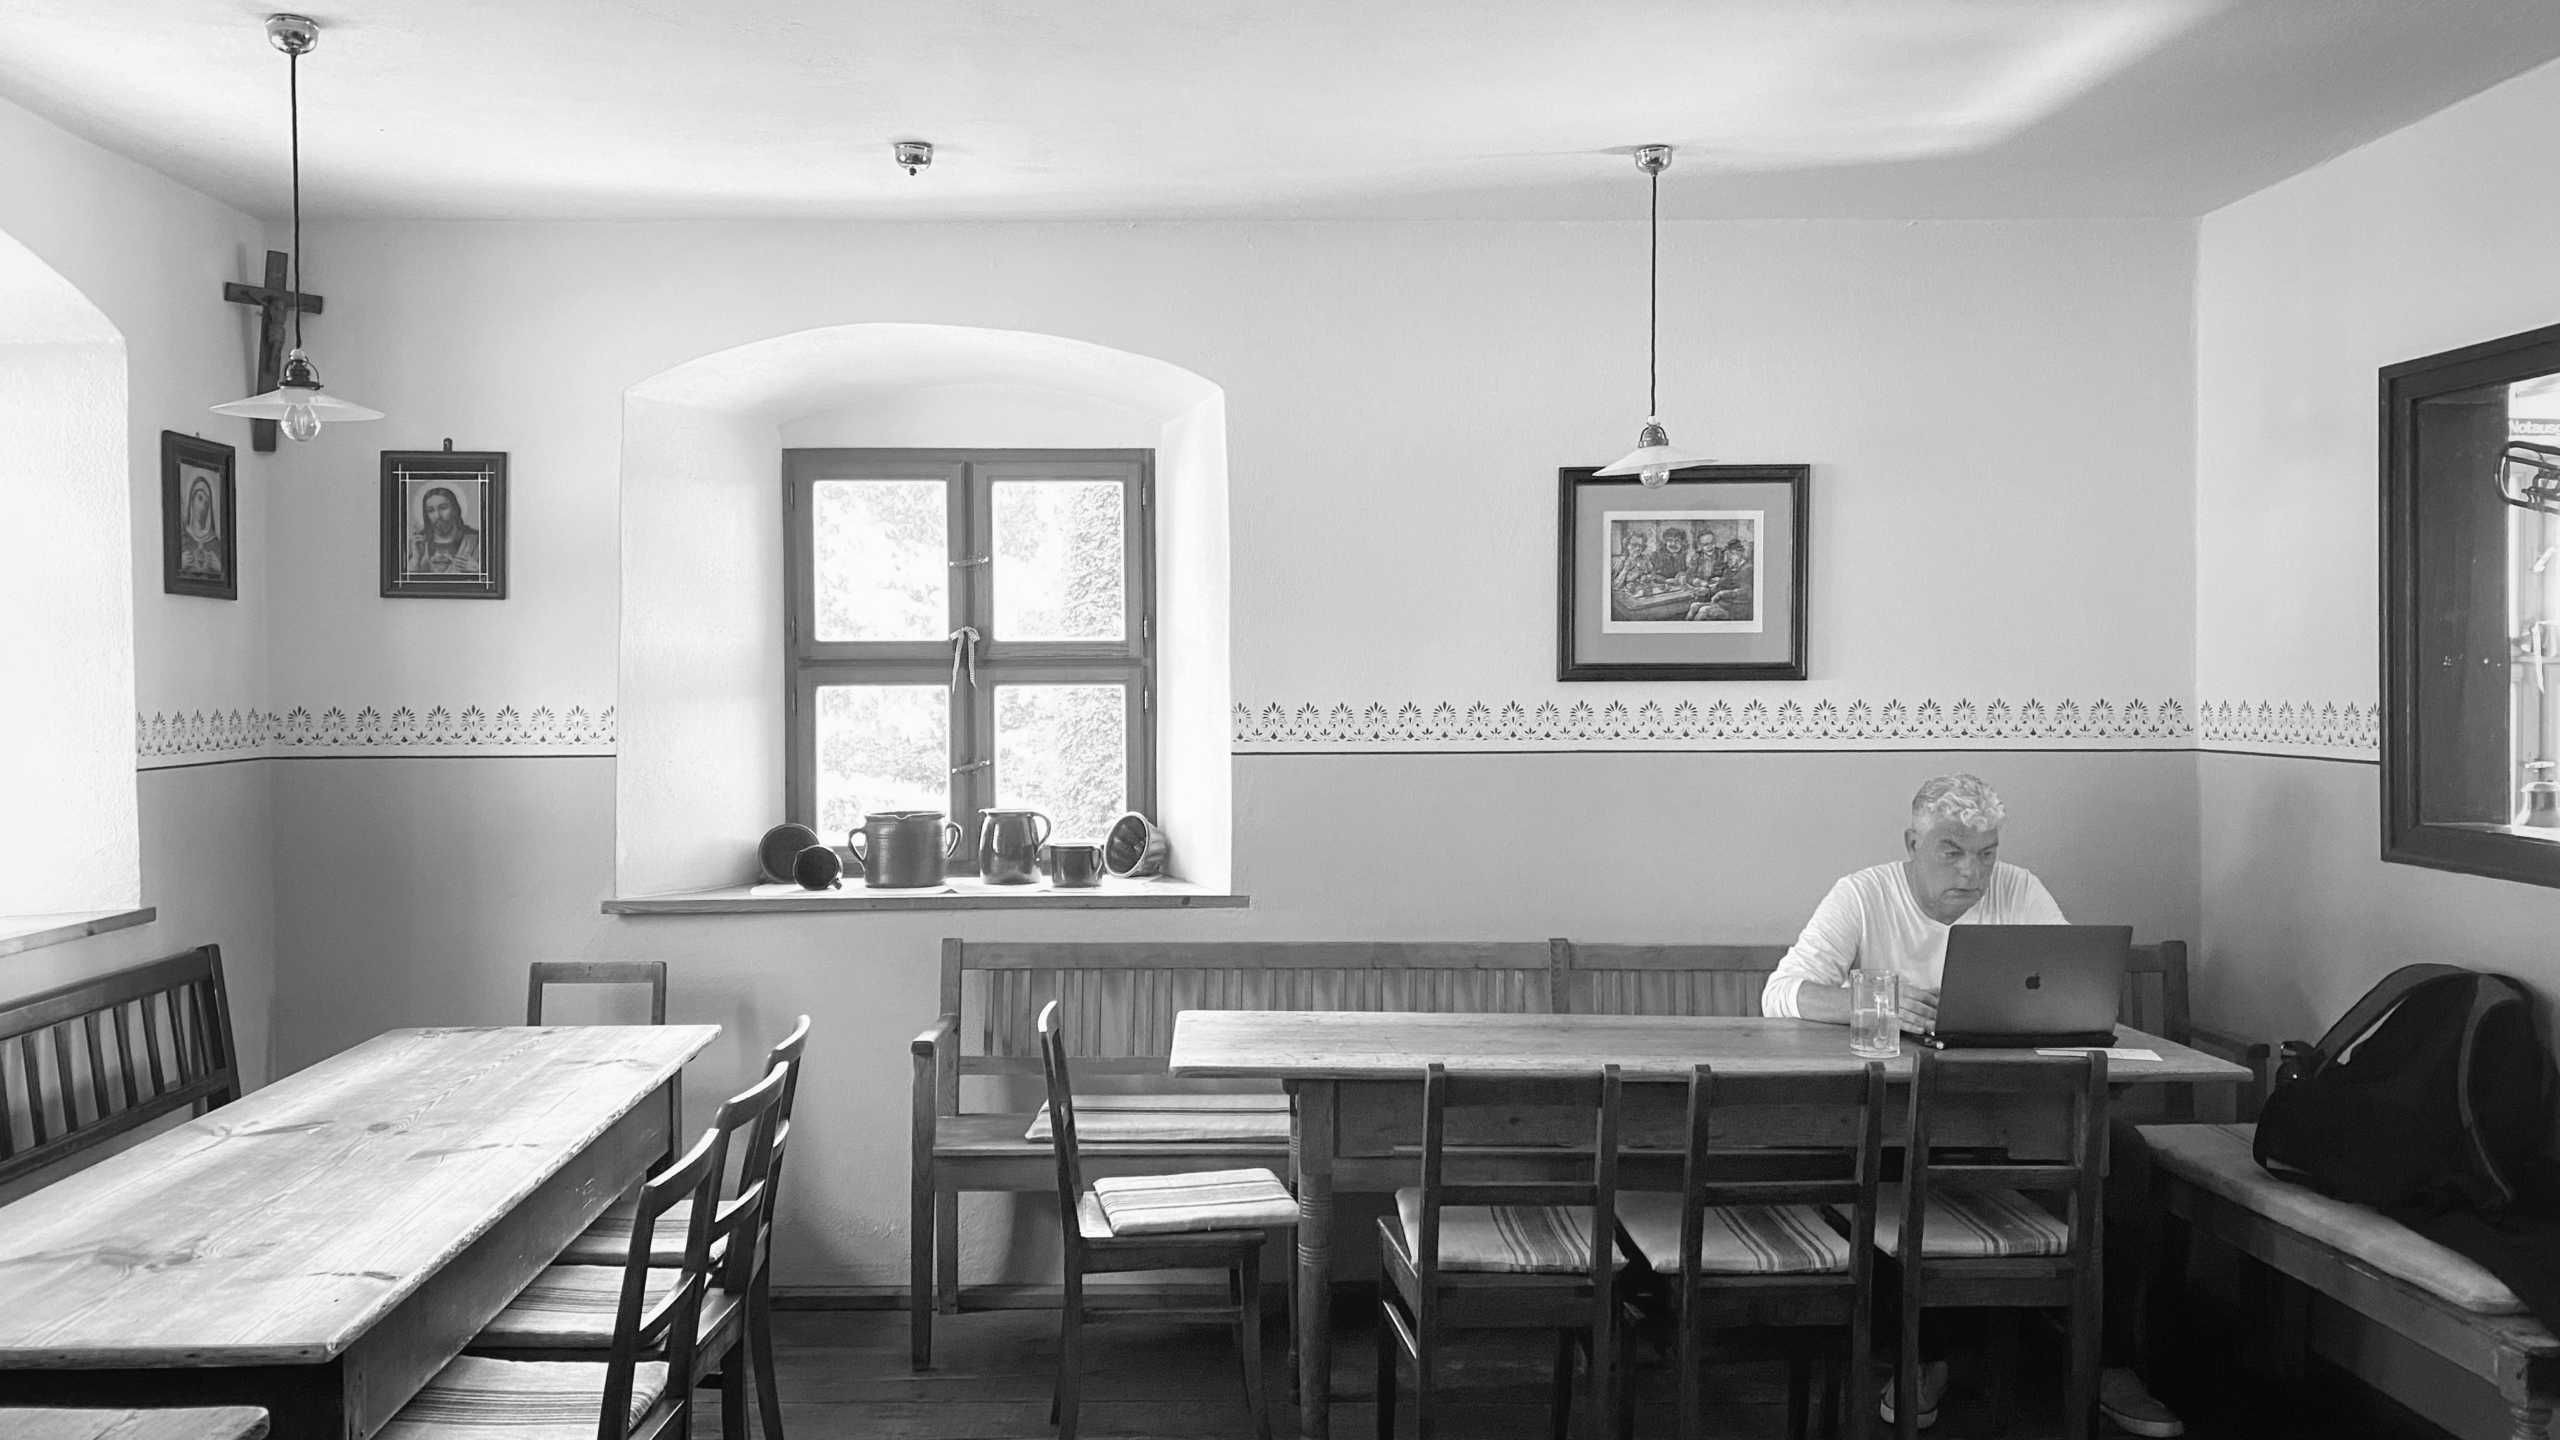 André Kinne in der rustikalen Gaststube, wo wir uns vor der Sommerhitze verstecken konnten | Johannes Ulrich Gehrke